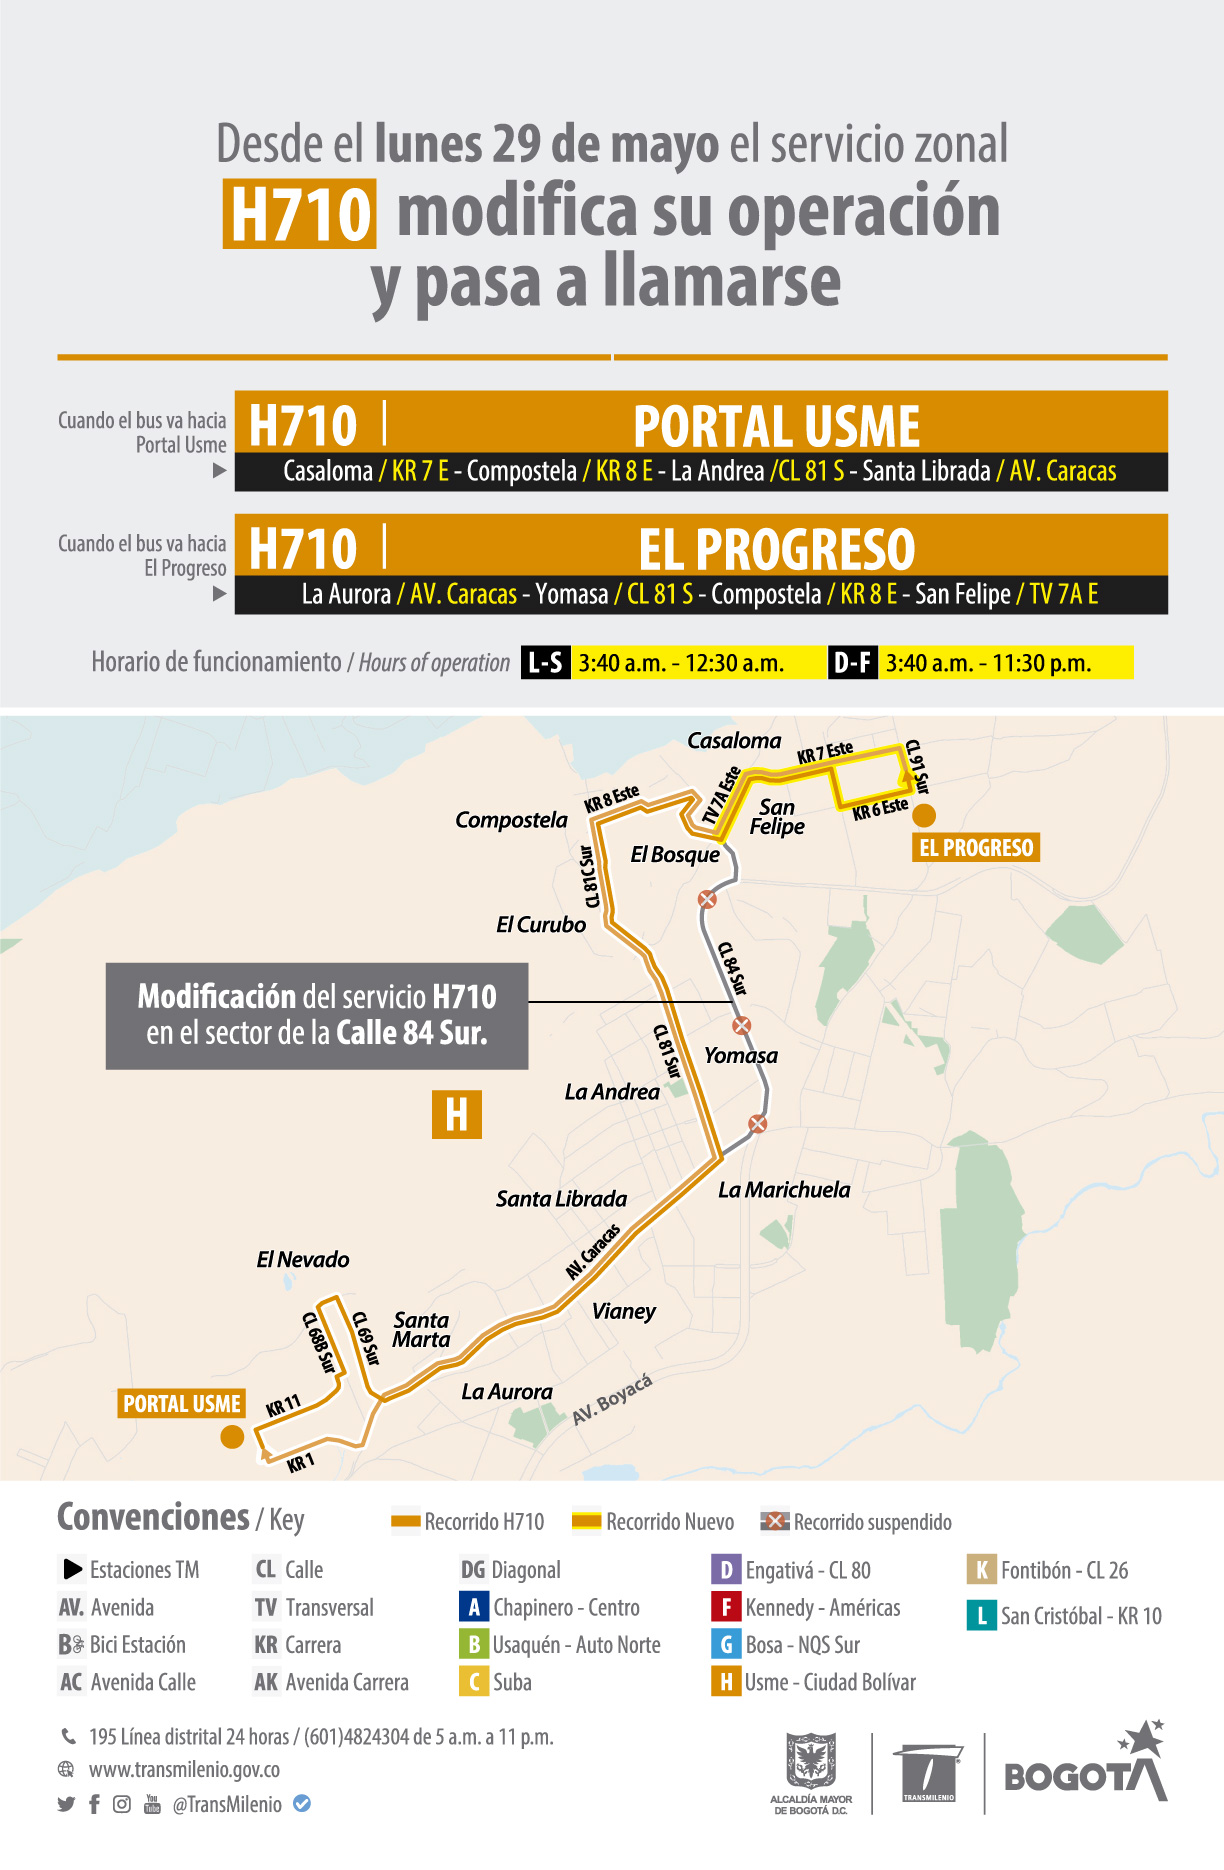 Servicio zonal H710 modifica su operación en el sector de El Progreso y pasa a llamarse H710 Portal Usme - H710 El Progreso